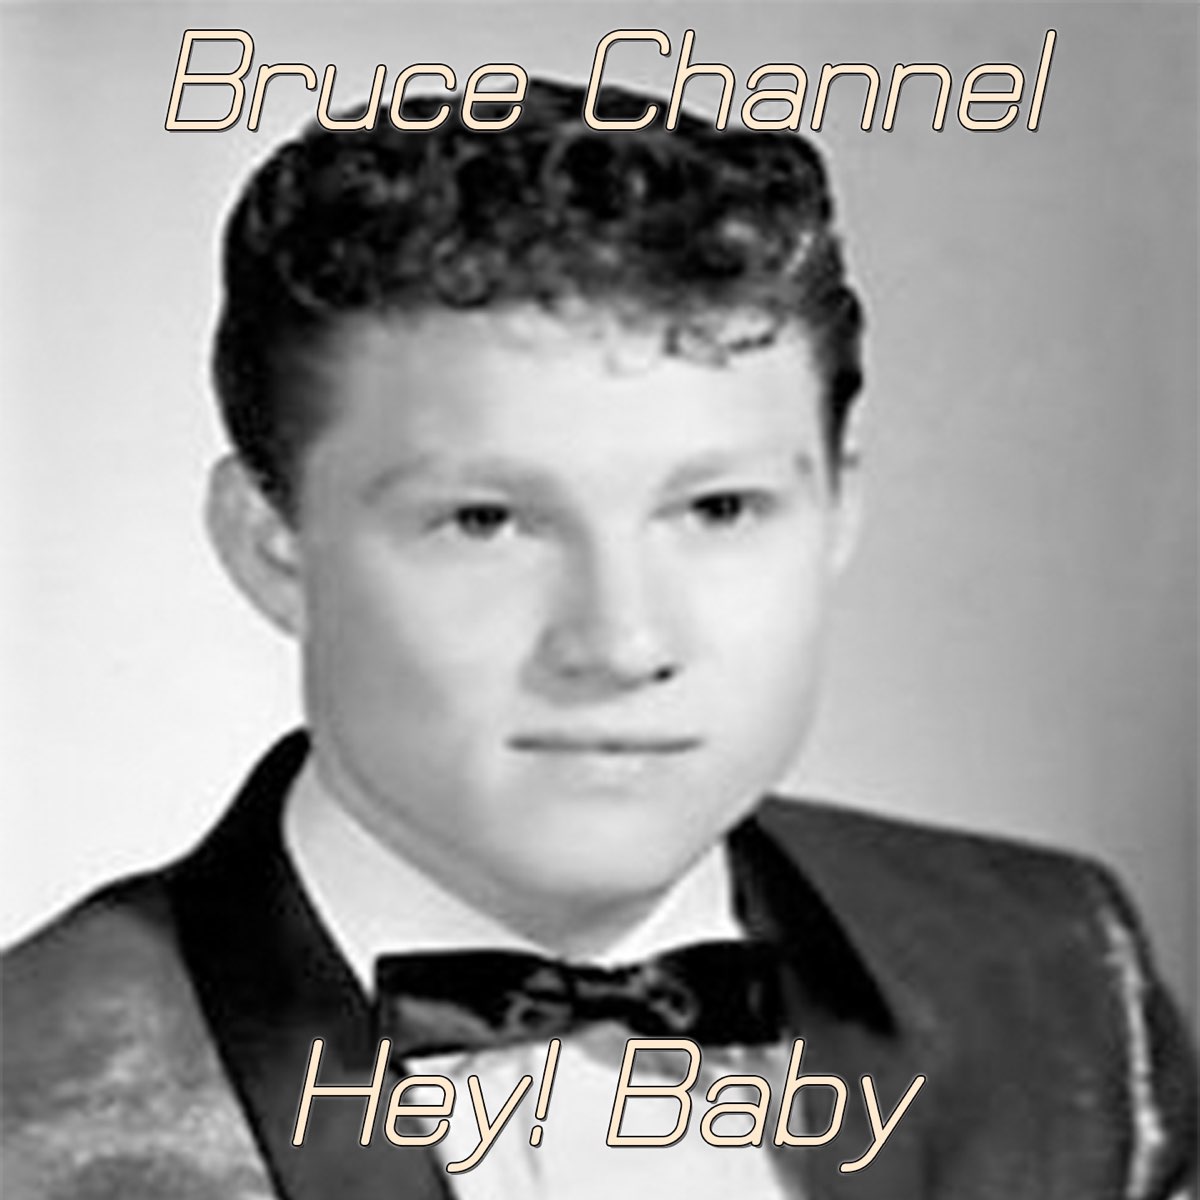 Hey! Baby - Single de Bruce Channel en Apple Music